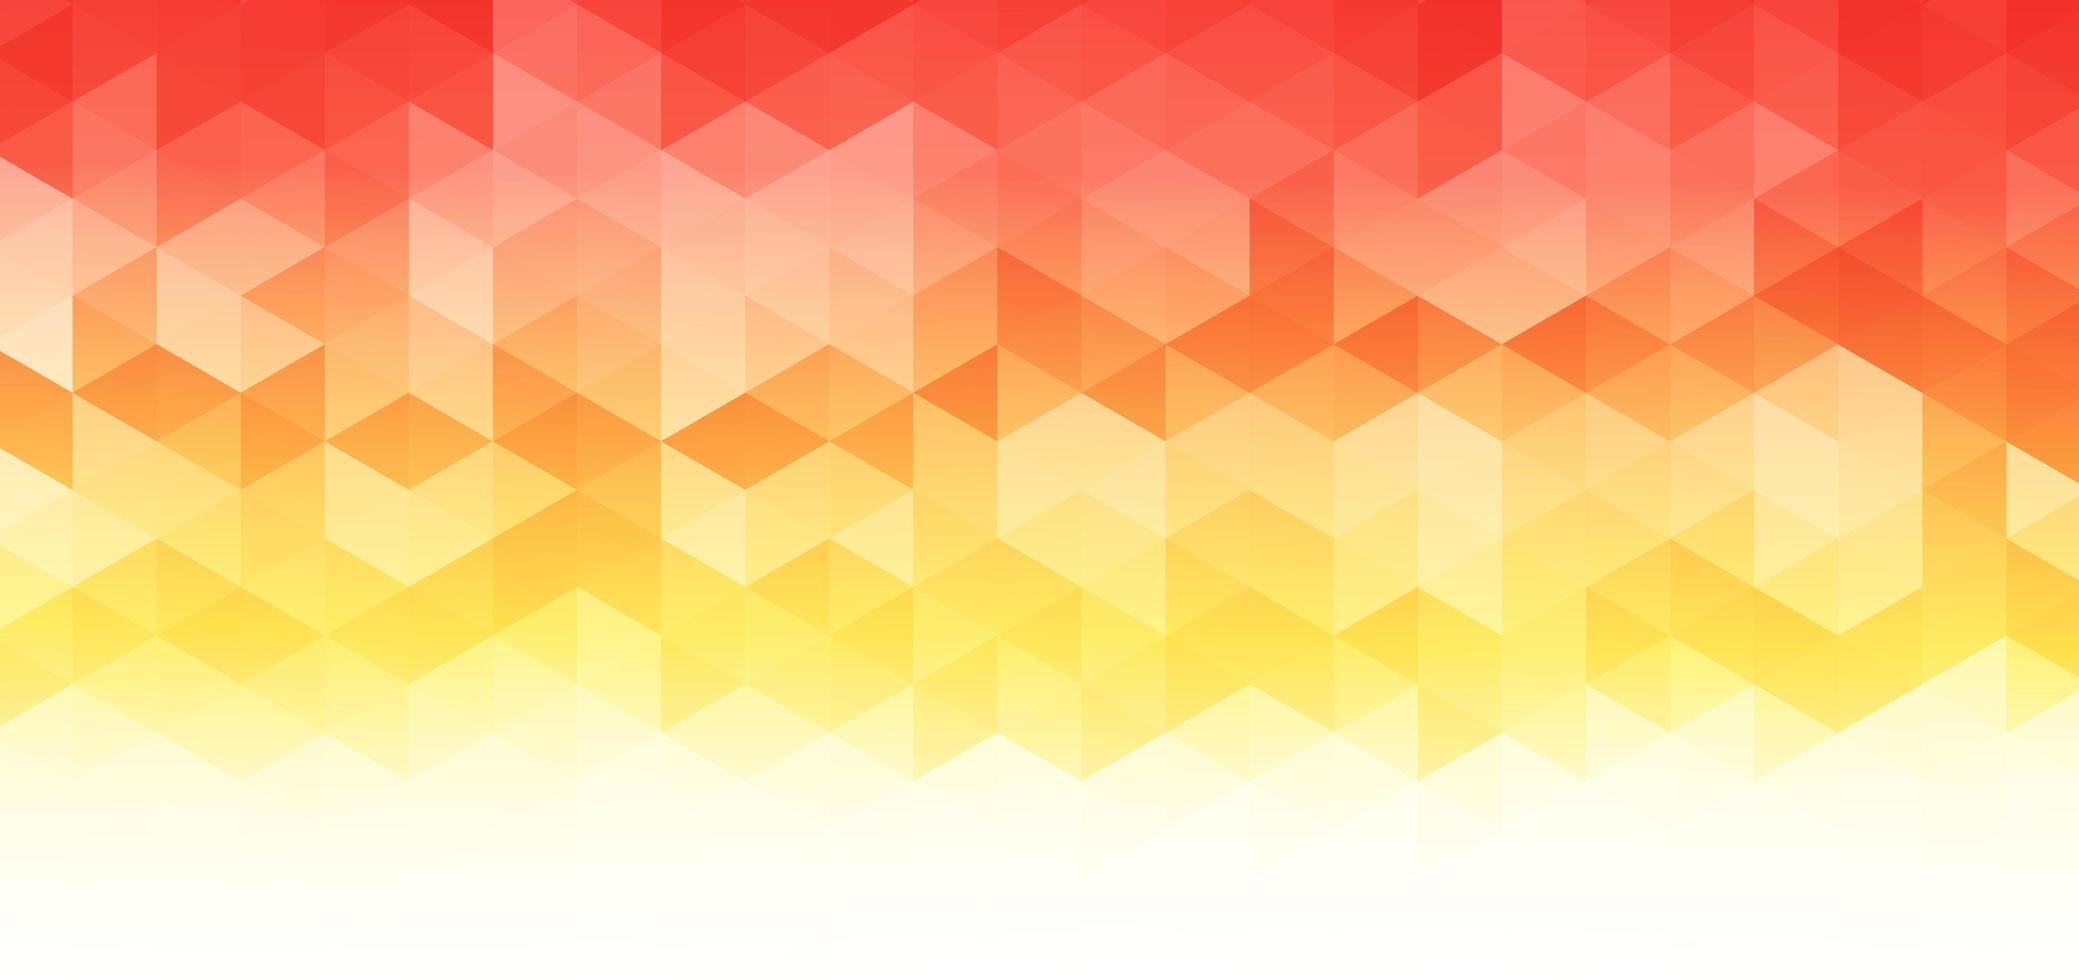 Abstract banner web geometrico modello esagonale giallo chiaro, arancione, rosso su sfondo bianco con spazio per il testo. vettore